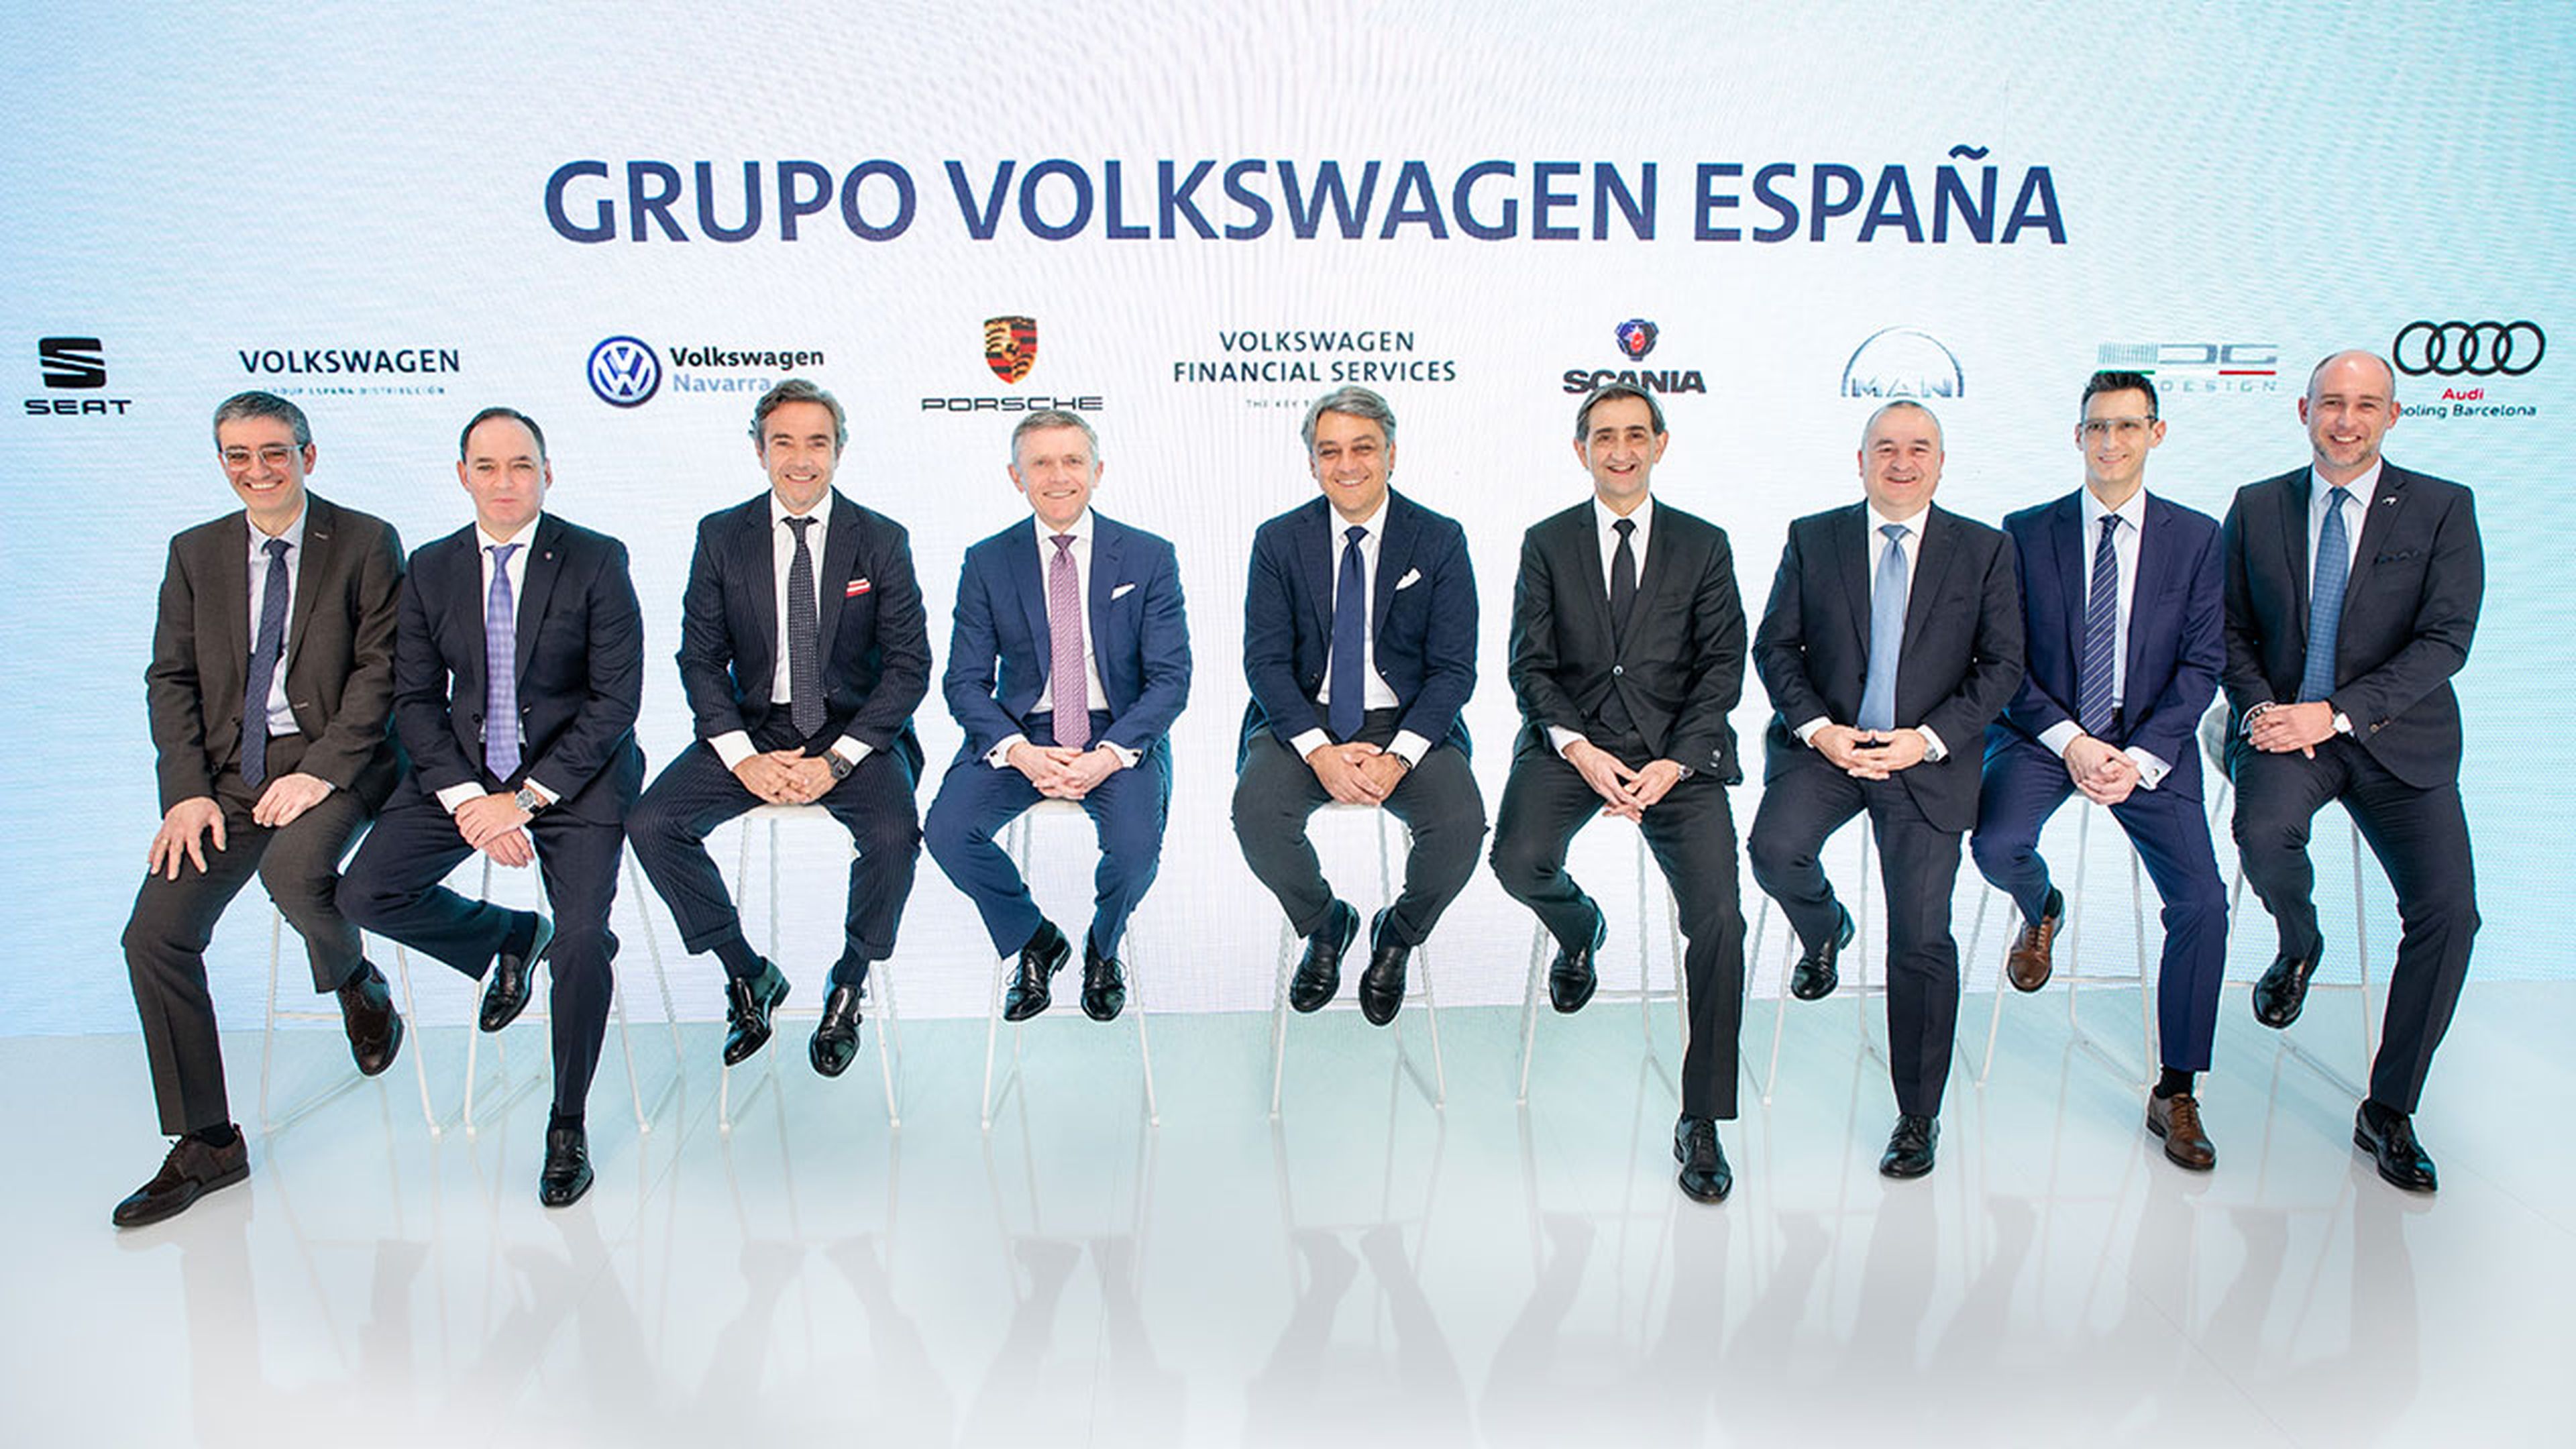 La plana mayor del Grupo Volkswagen España.